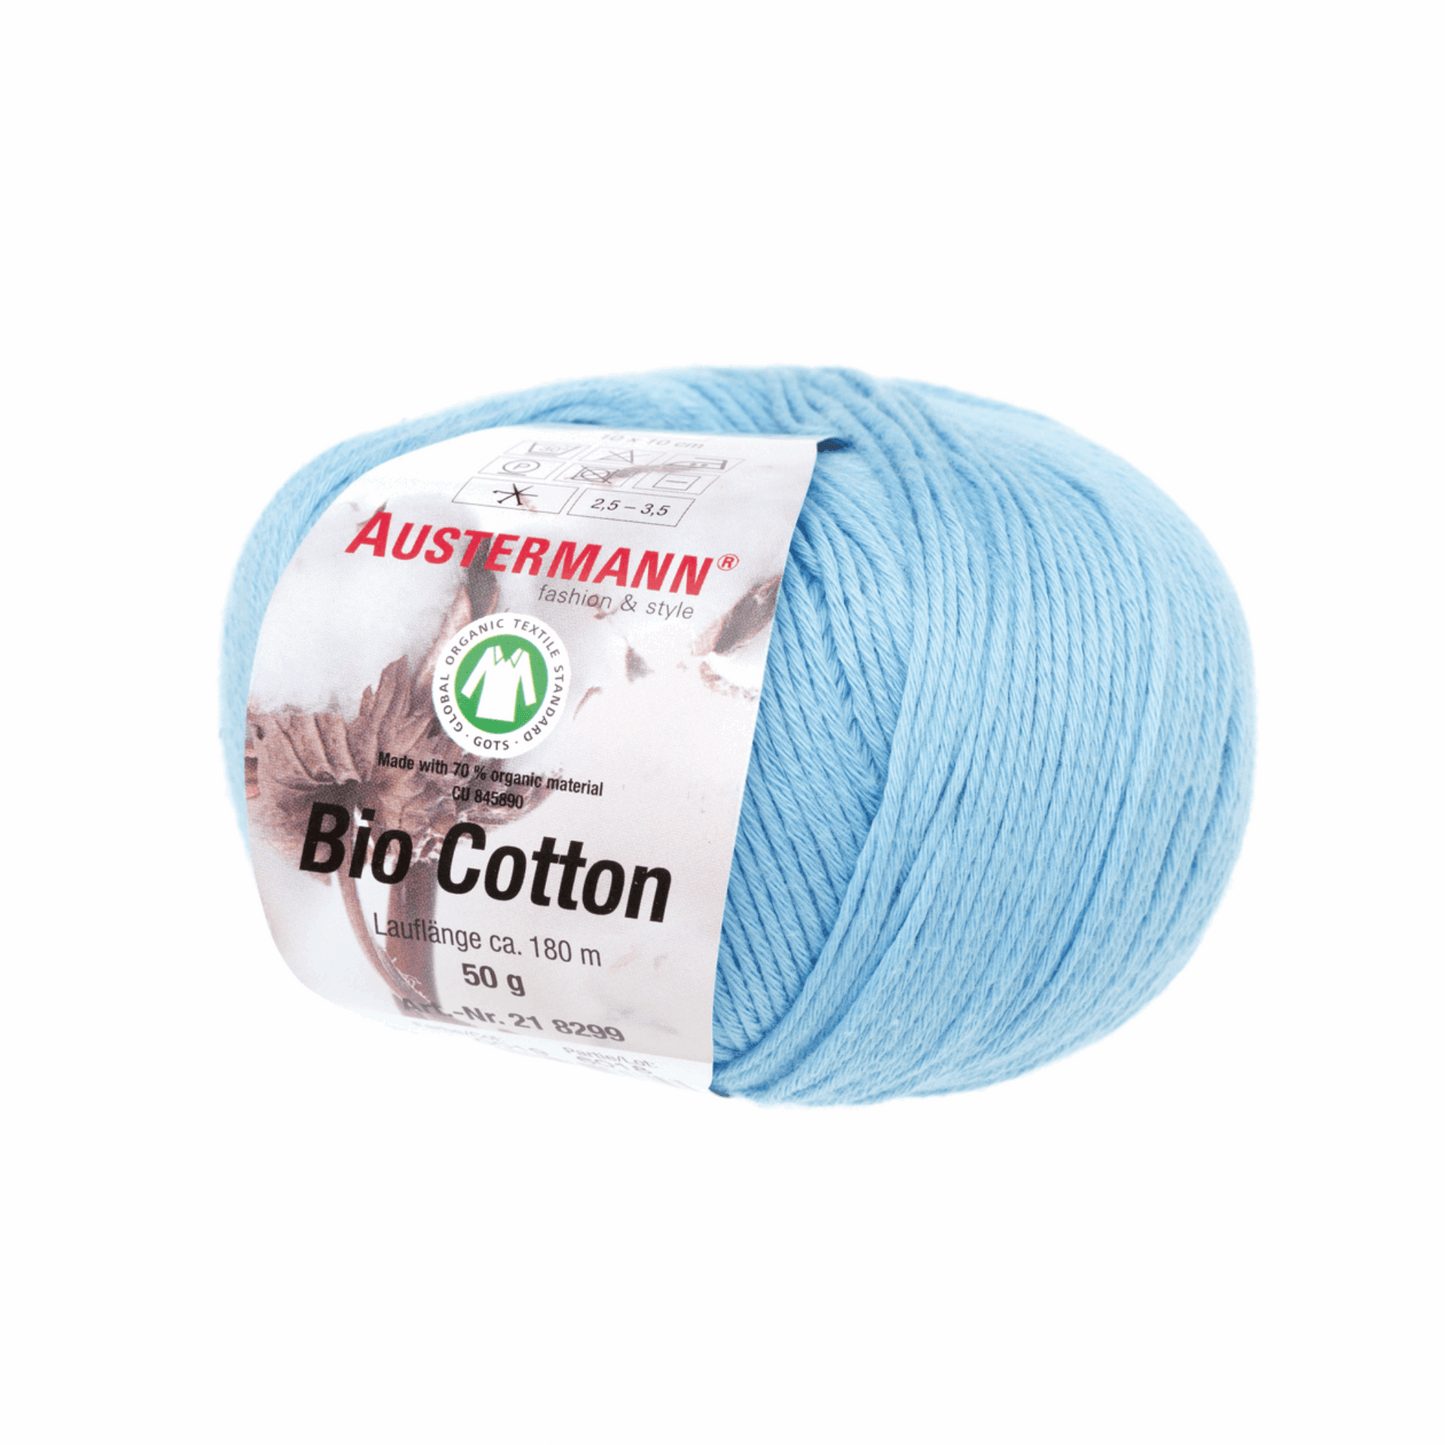 Schoeller-Austermann Gots Organic Cotton, 50g, 98299, color 19